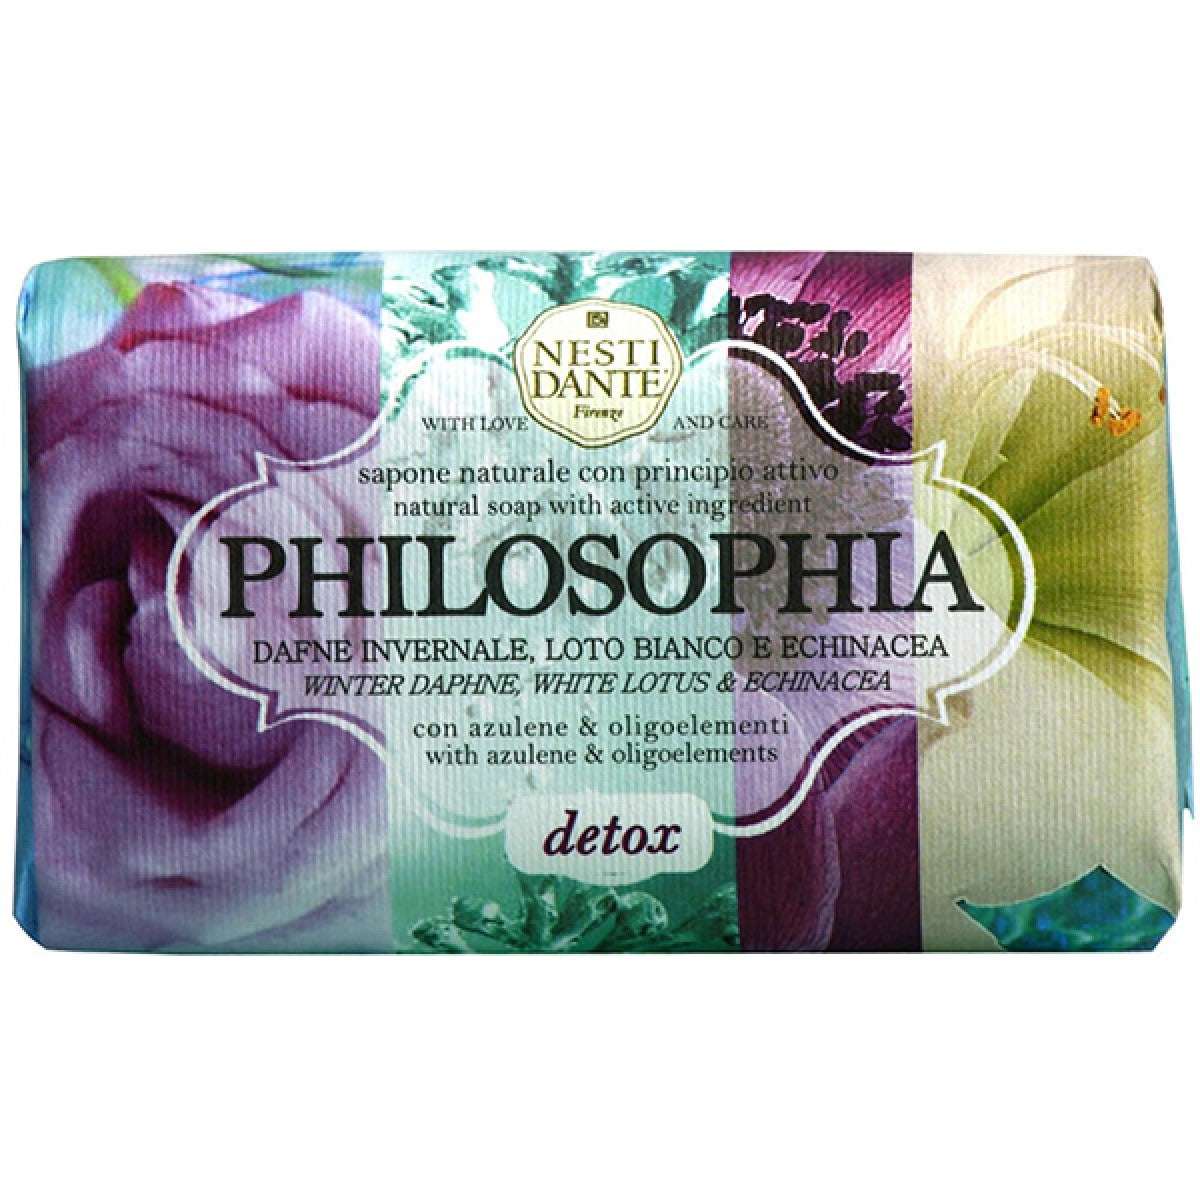 Primary Image of Philosophia Detox Soap